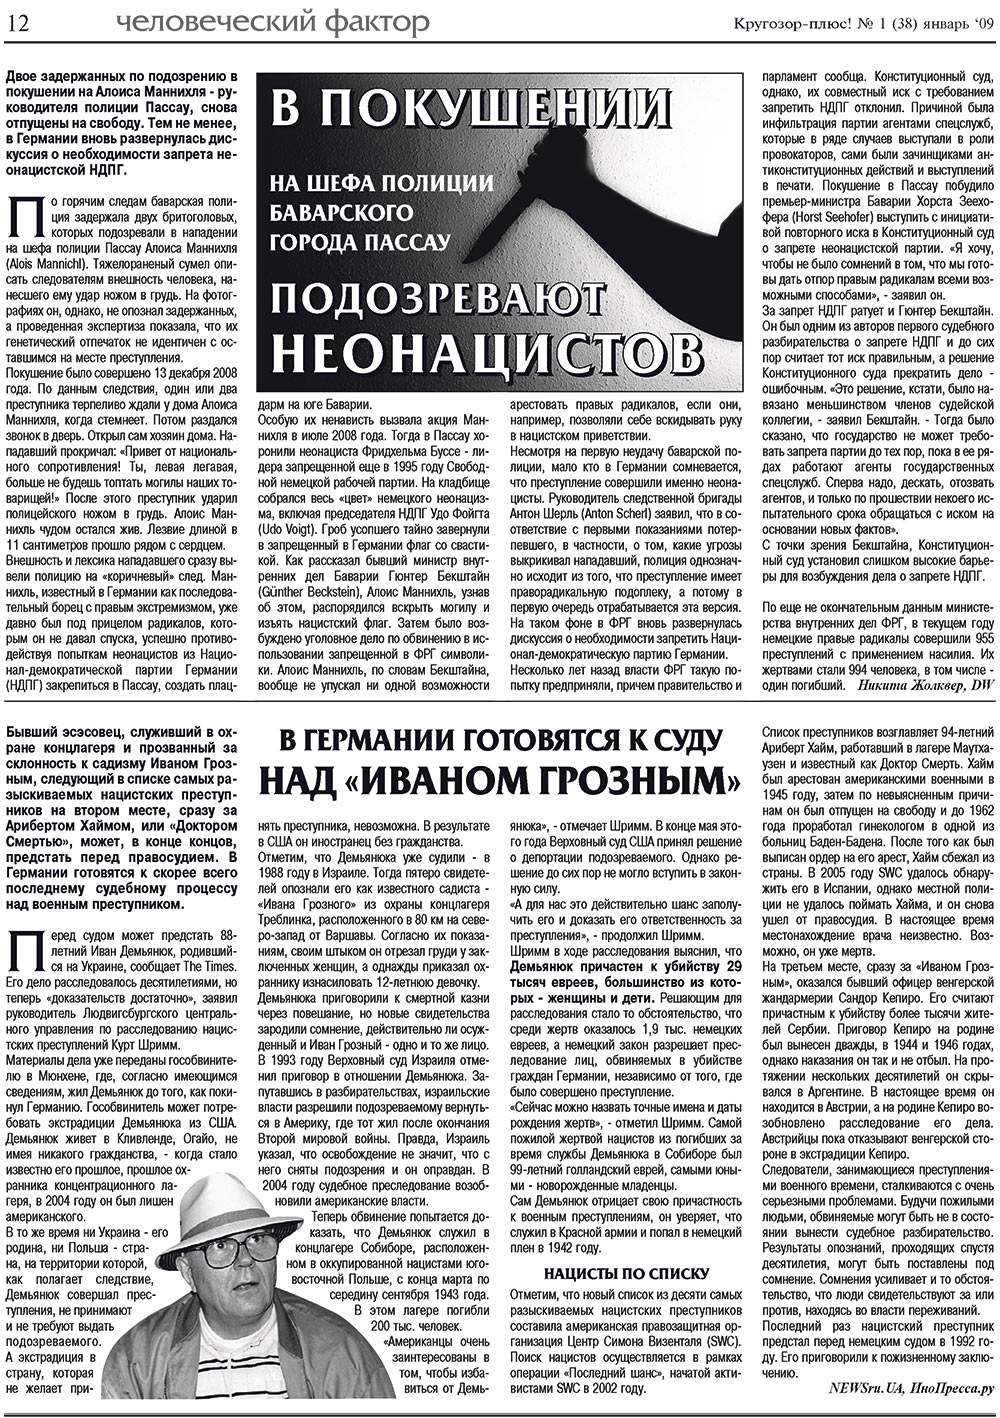 Кругозор плюс!, газета. 2009 №1 стр.12